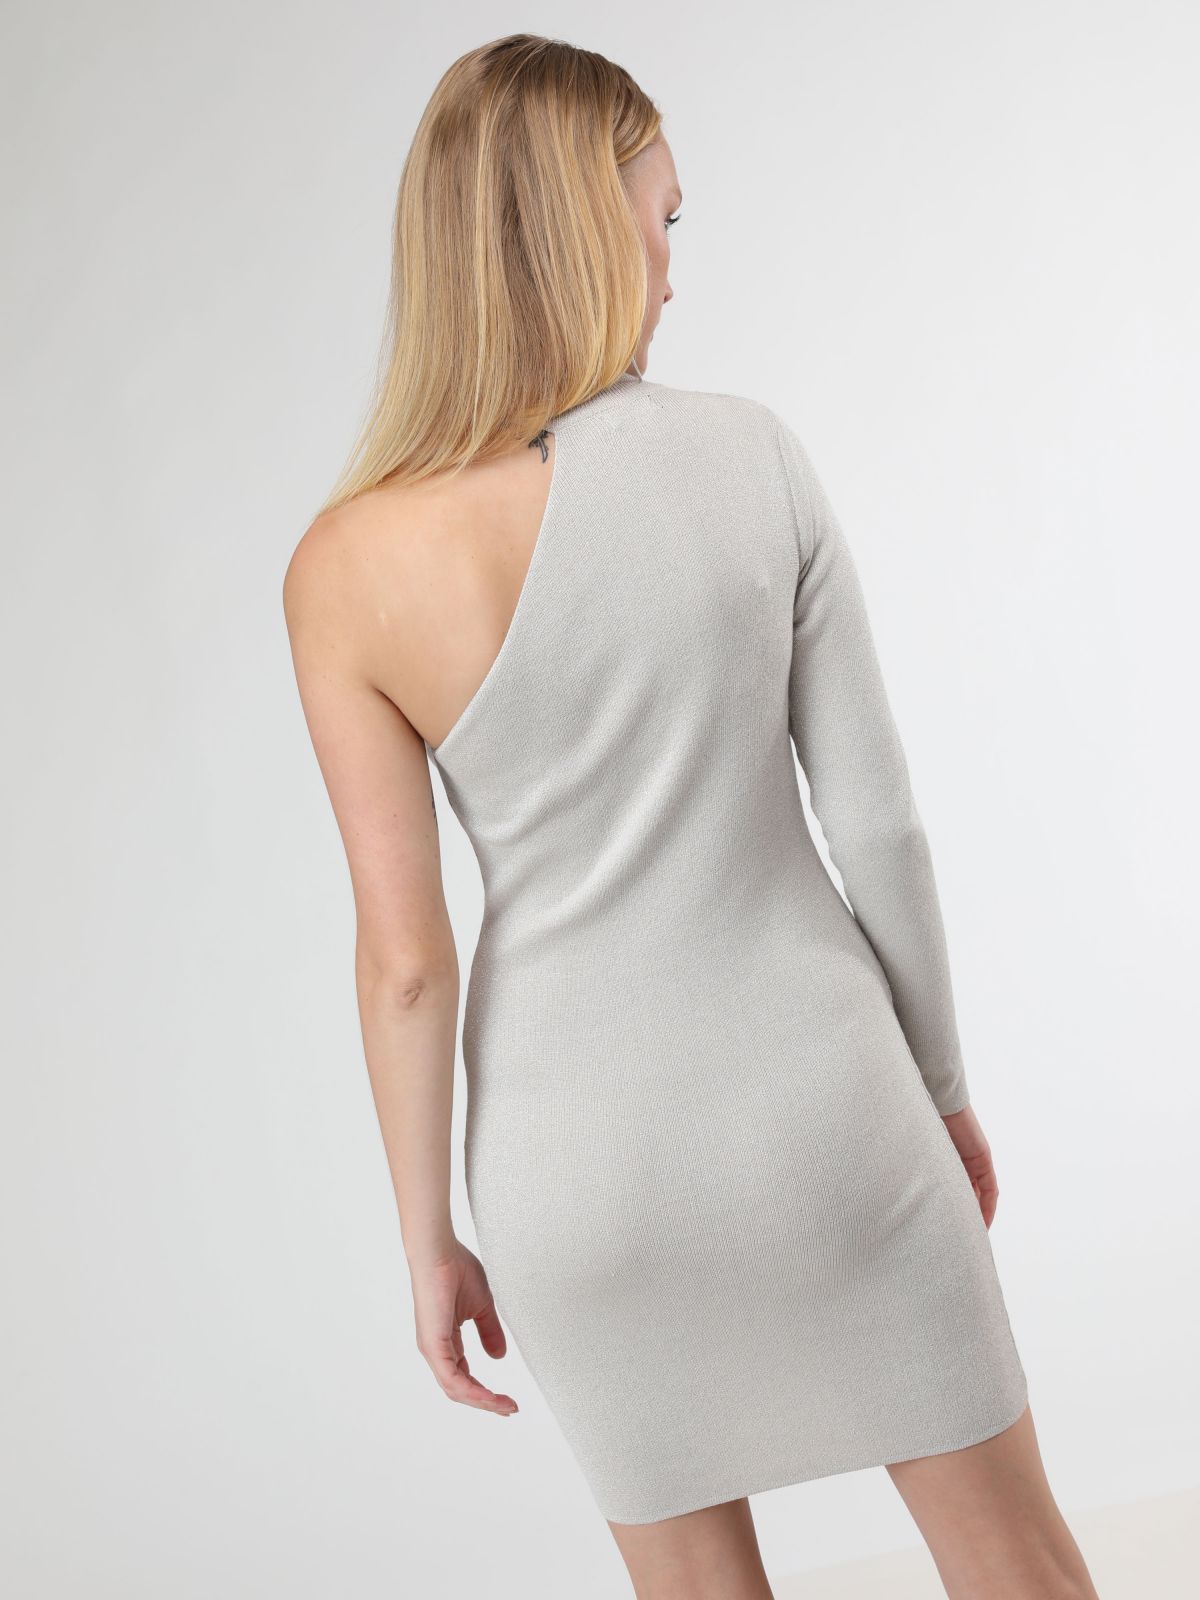  שמלת לורקס מיני וואן שולדר עם צווארון קולר של TERMINAL X